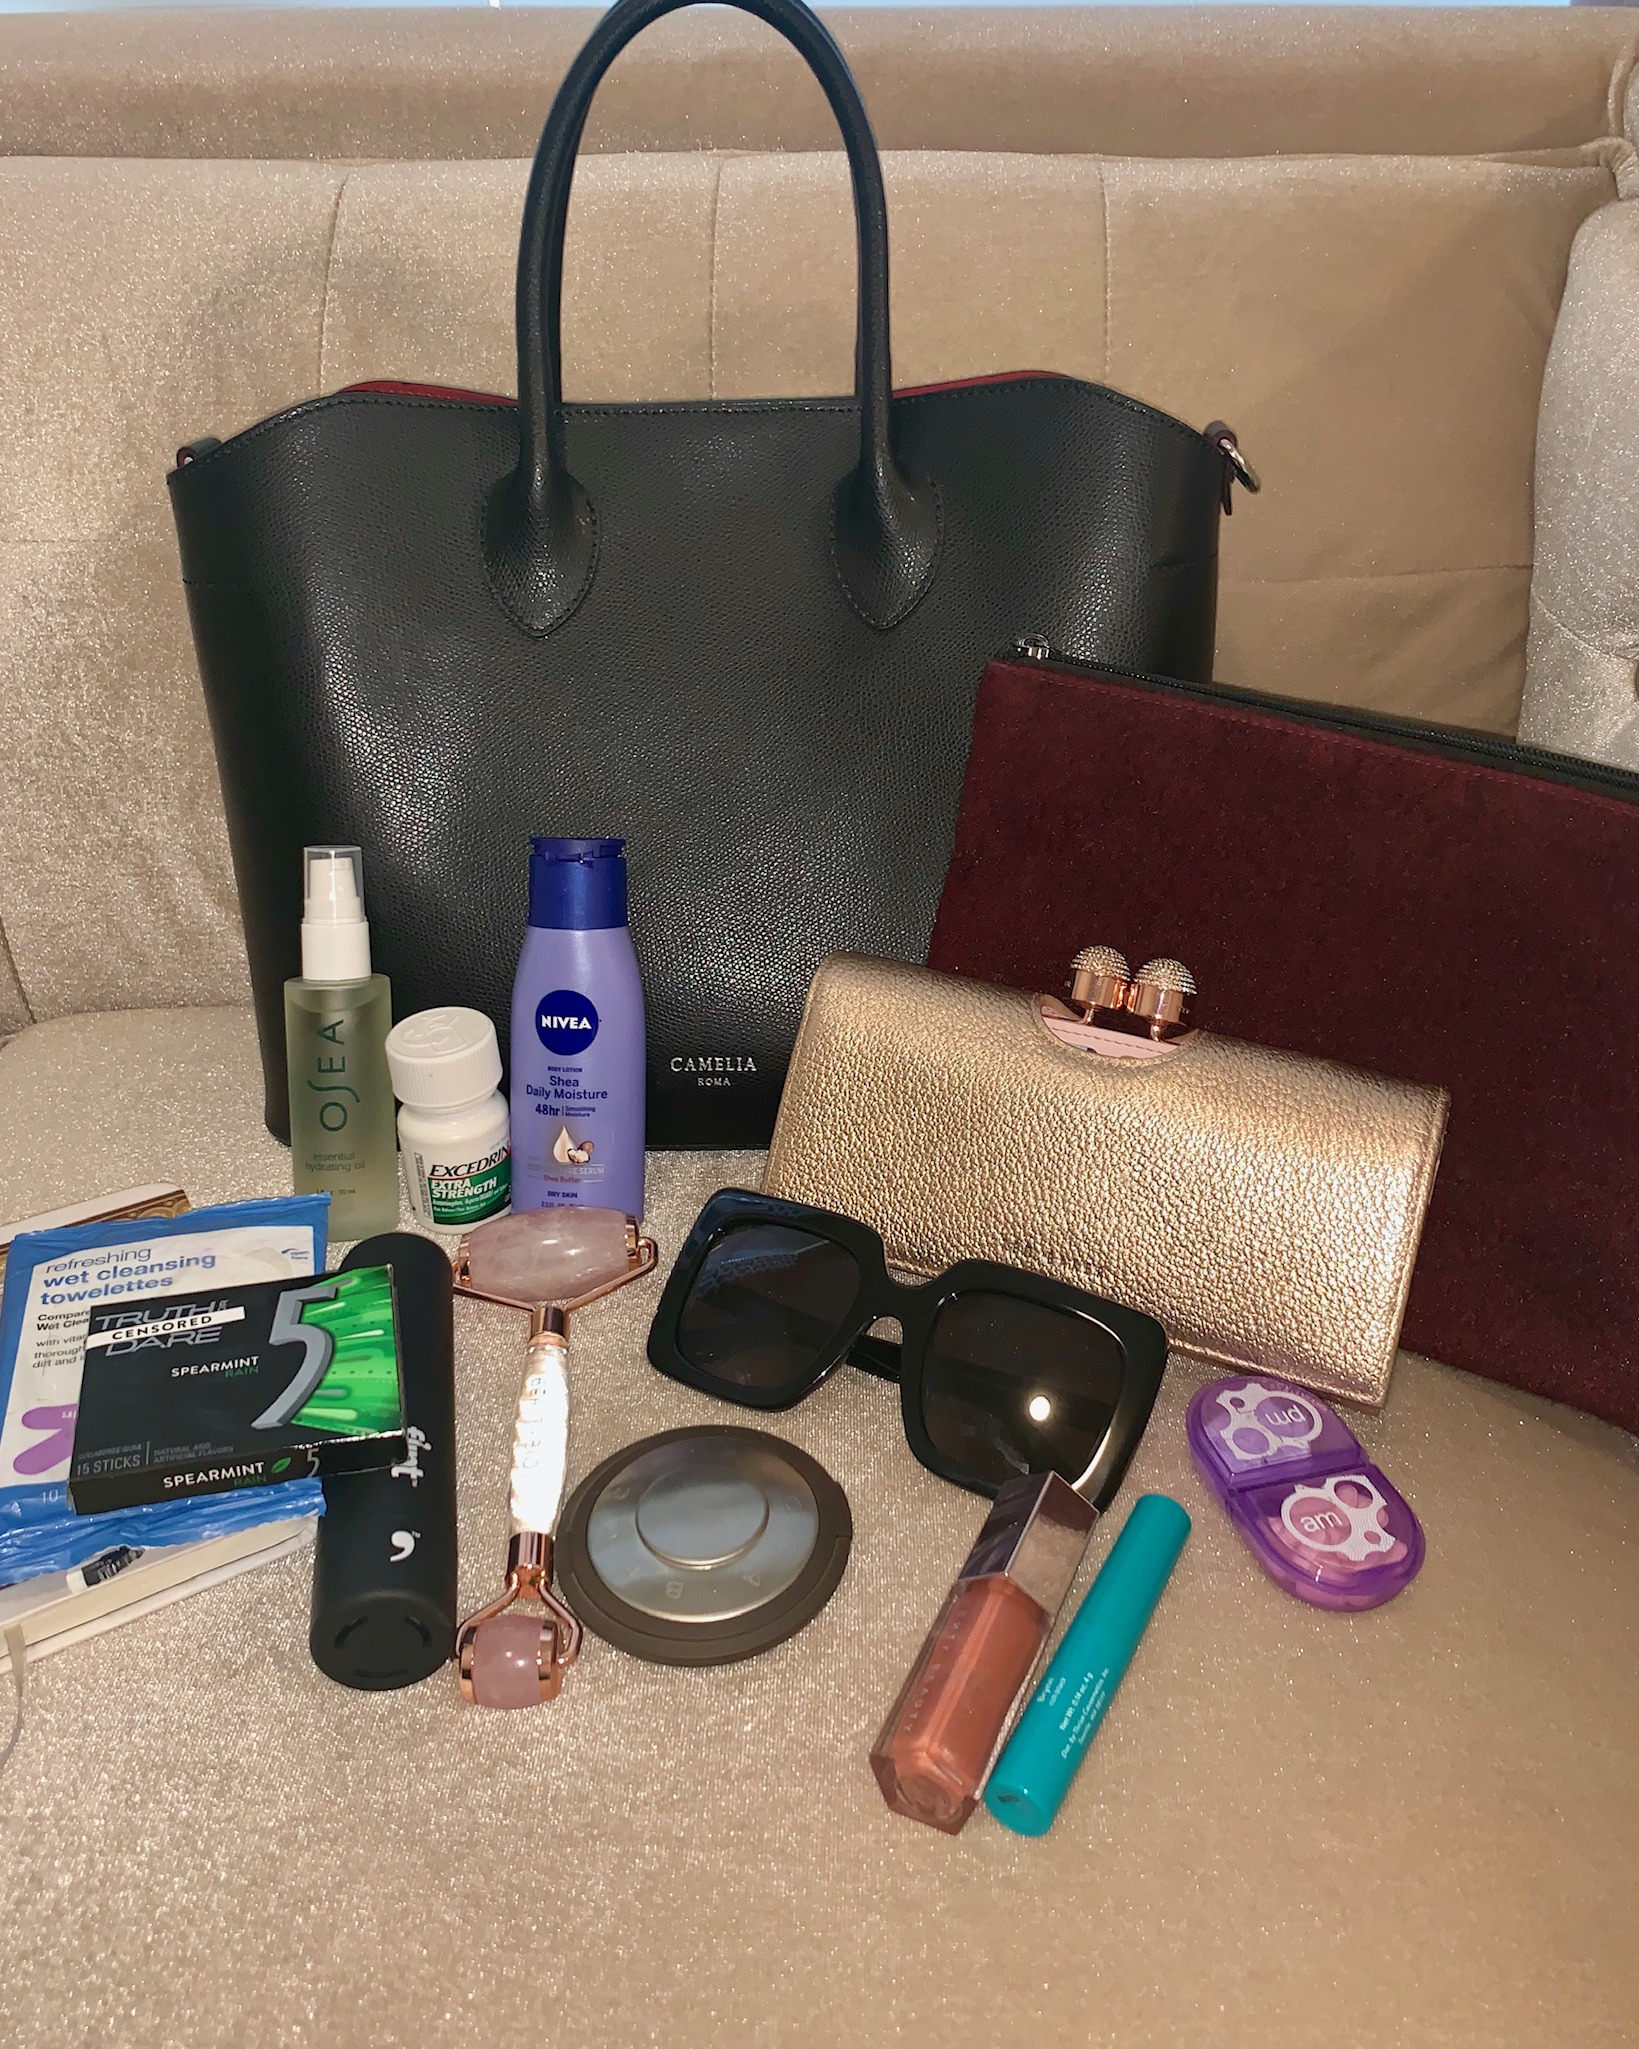 what's in your handbag